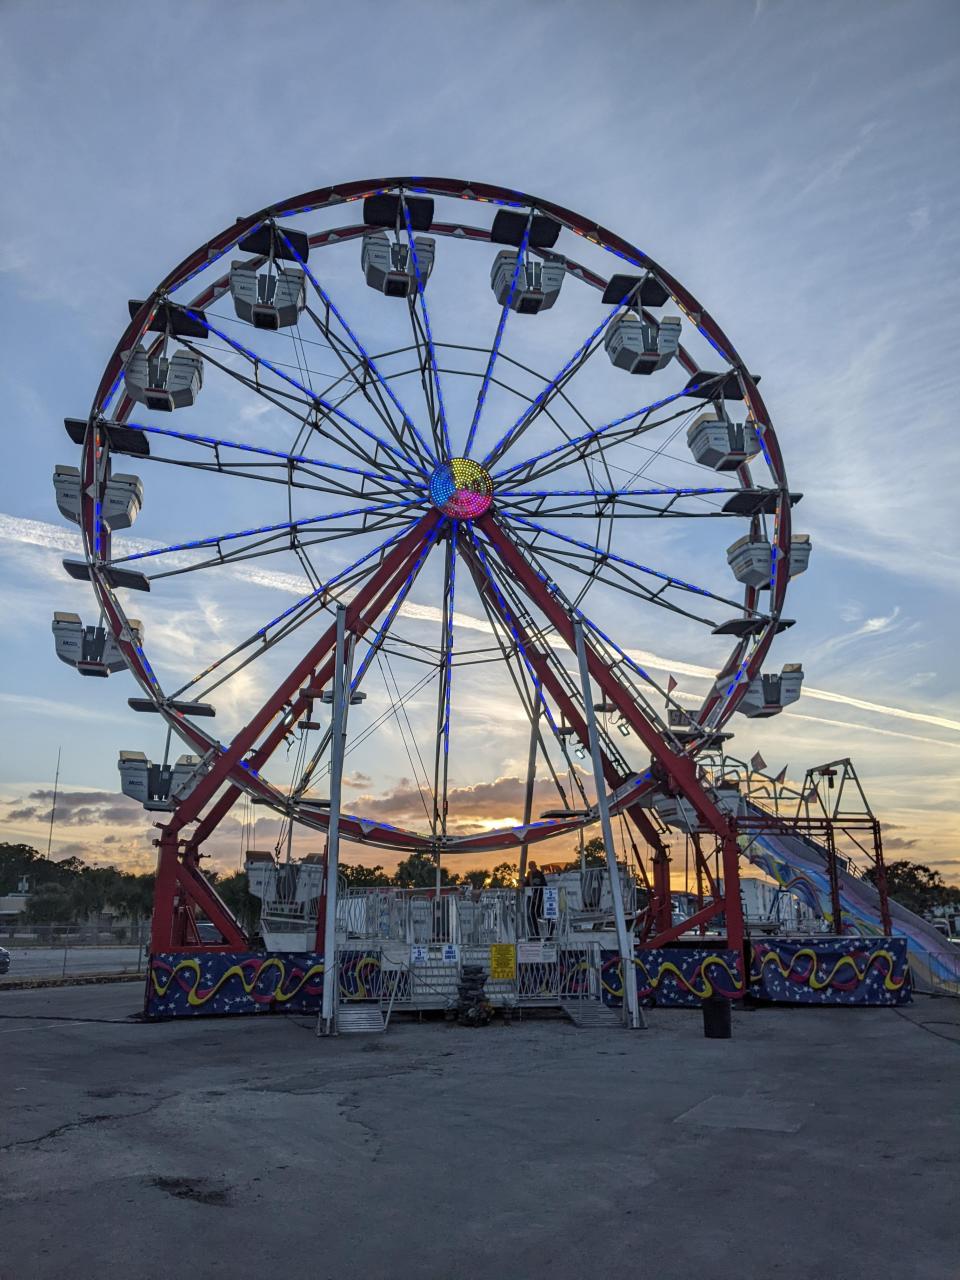 The 100-foot-tall Ferris wheel at the annual Bonita Holiday Fair